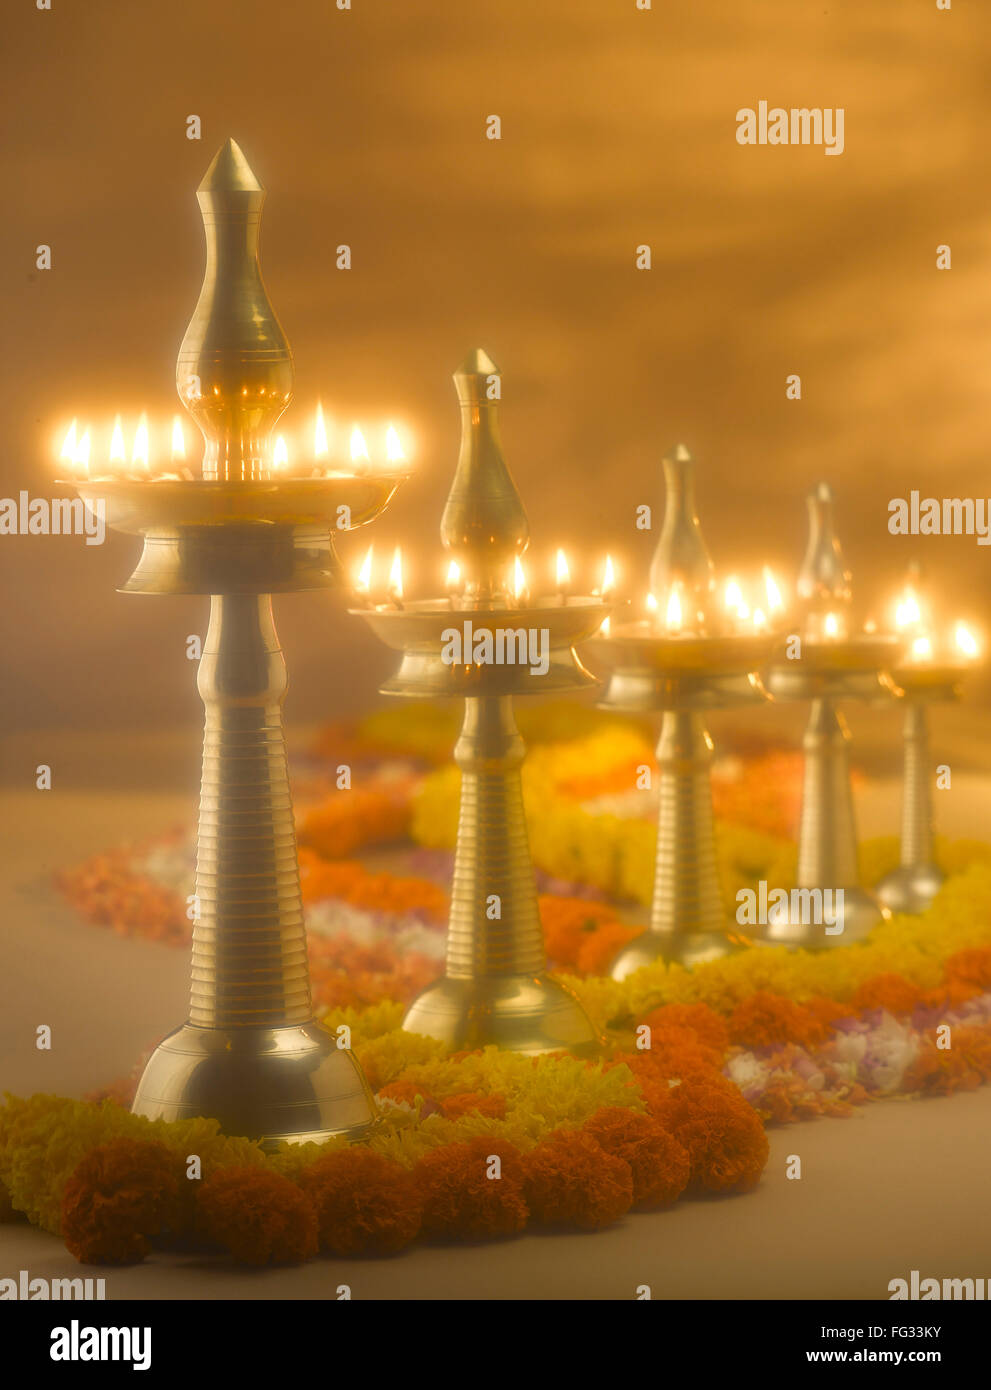 Messing Lampen und Blumen Dekoration während Diwali-fest; Indien Stockfoto